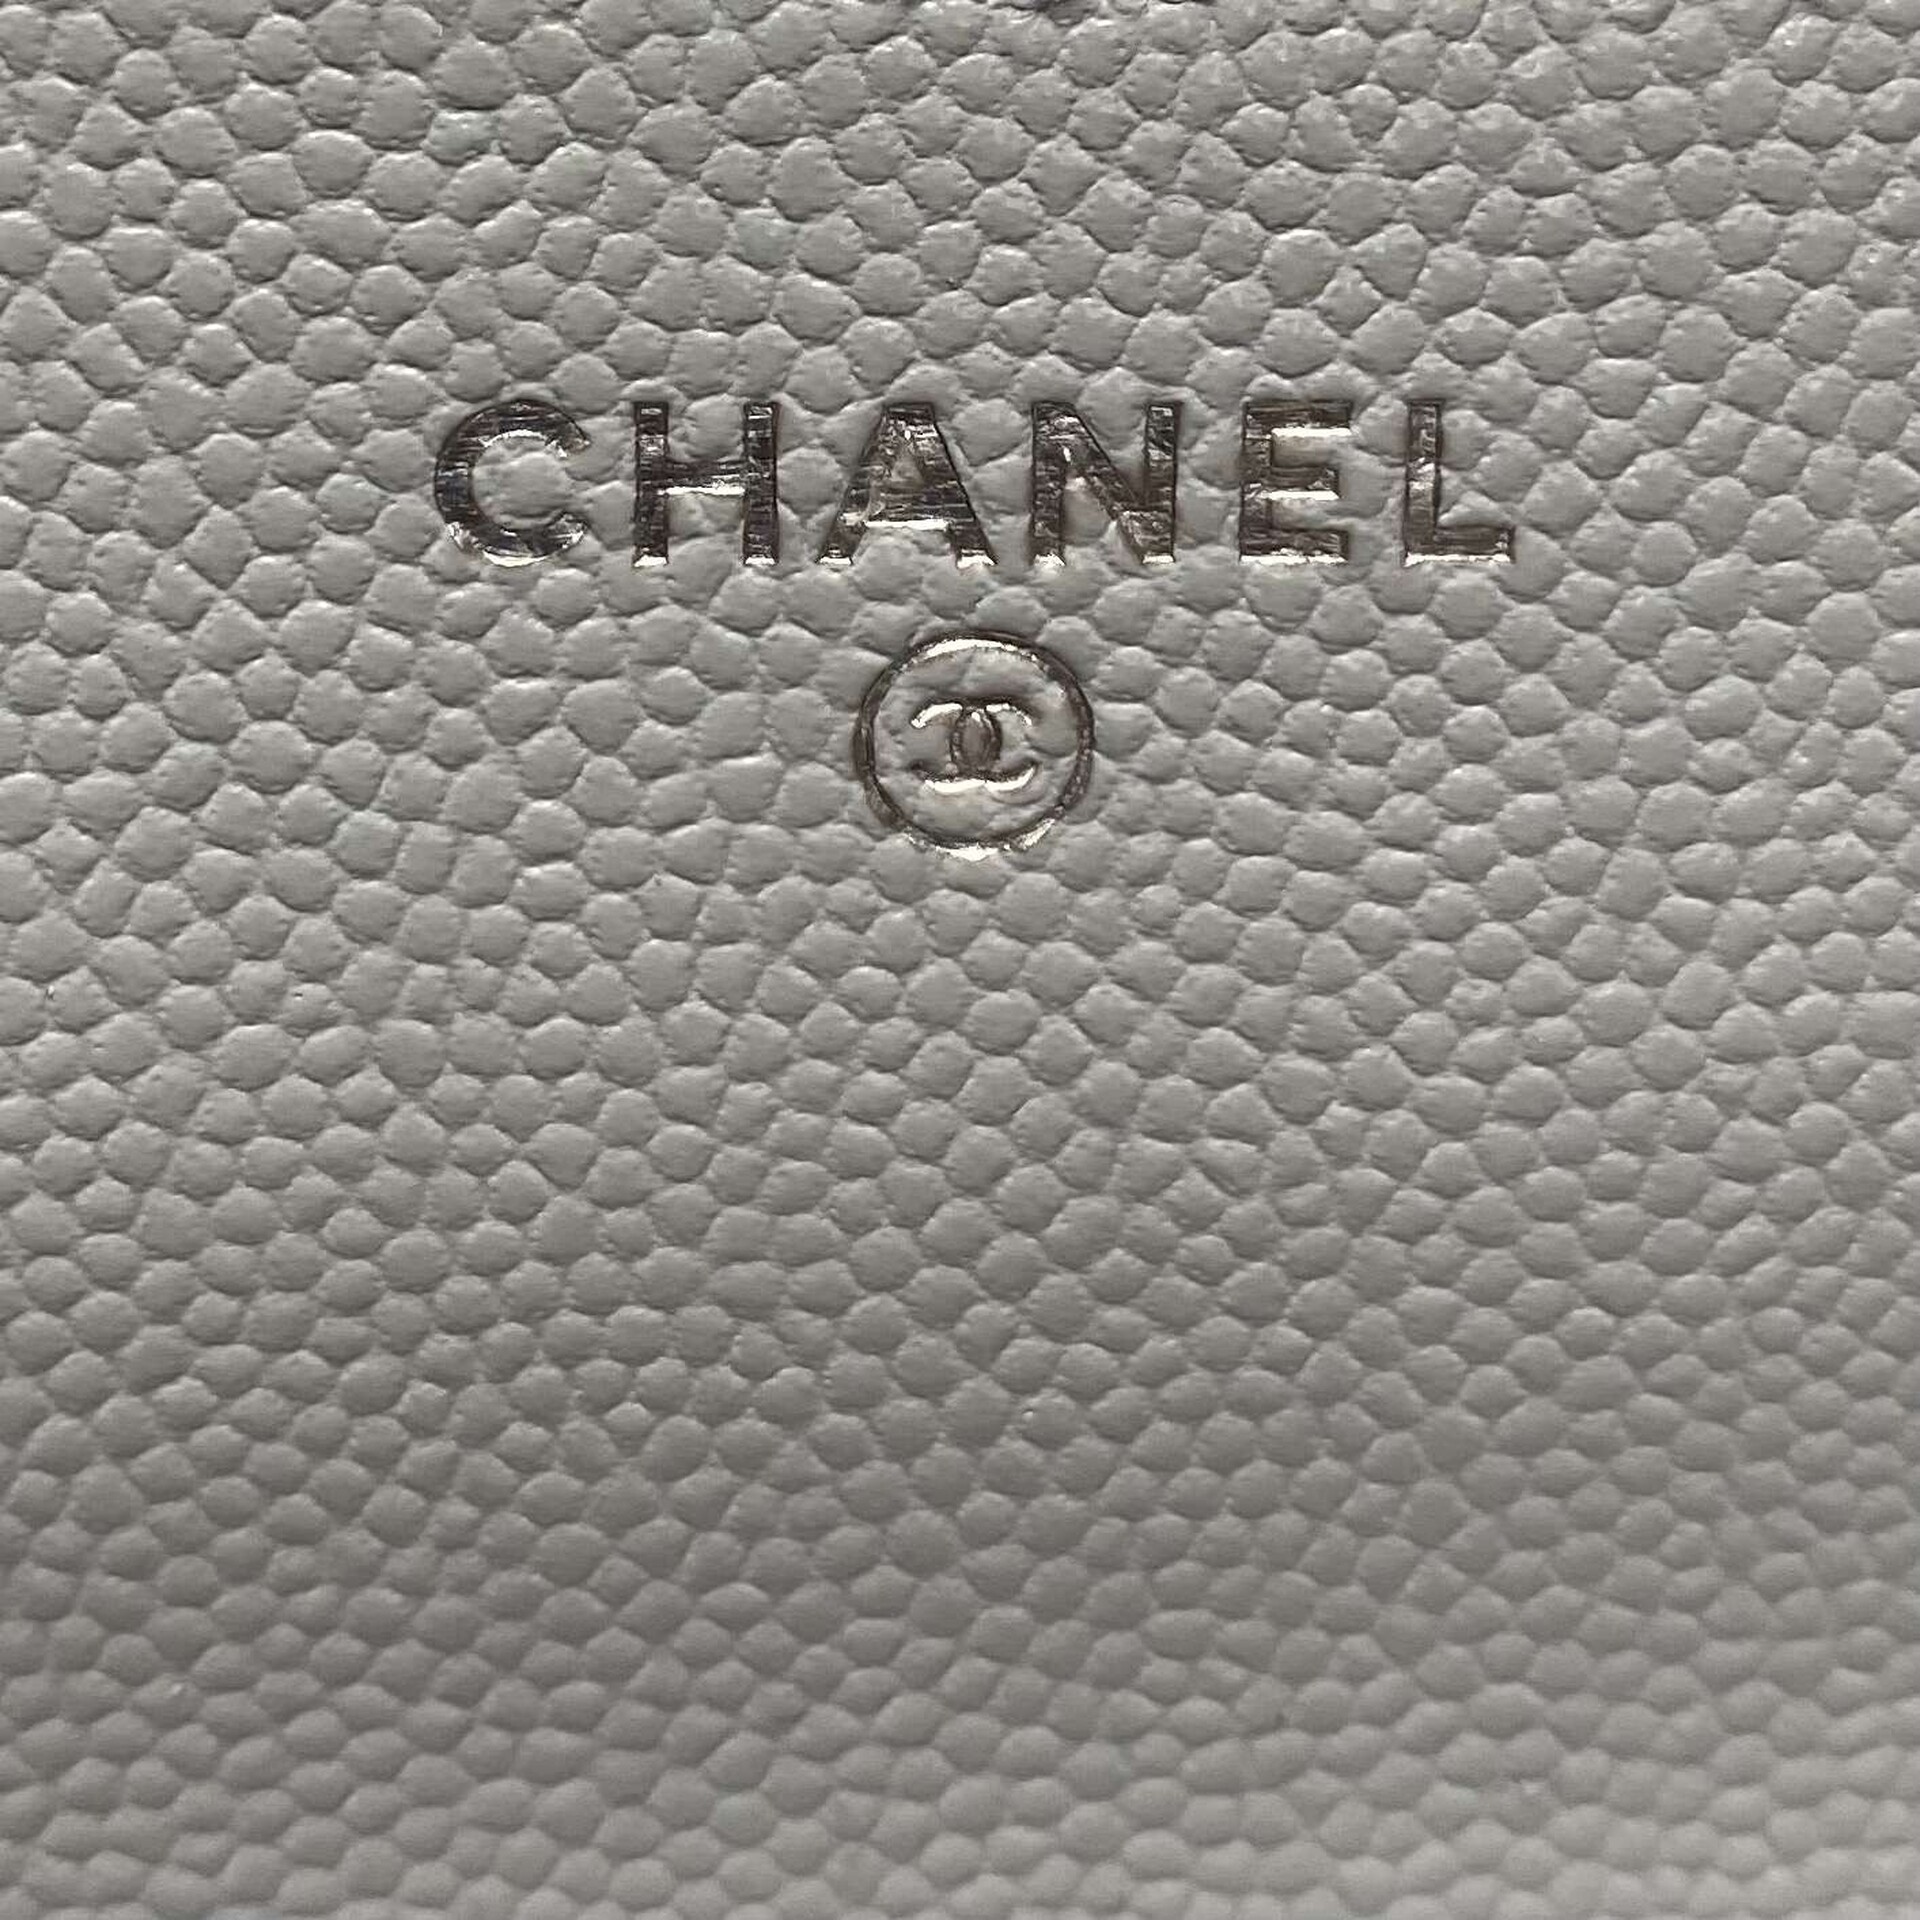 Bolsa Chanel Woc